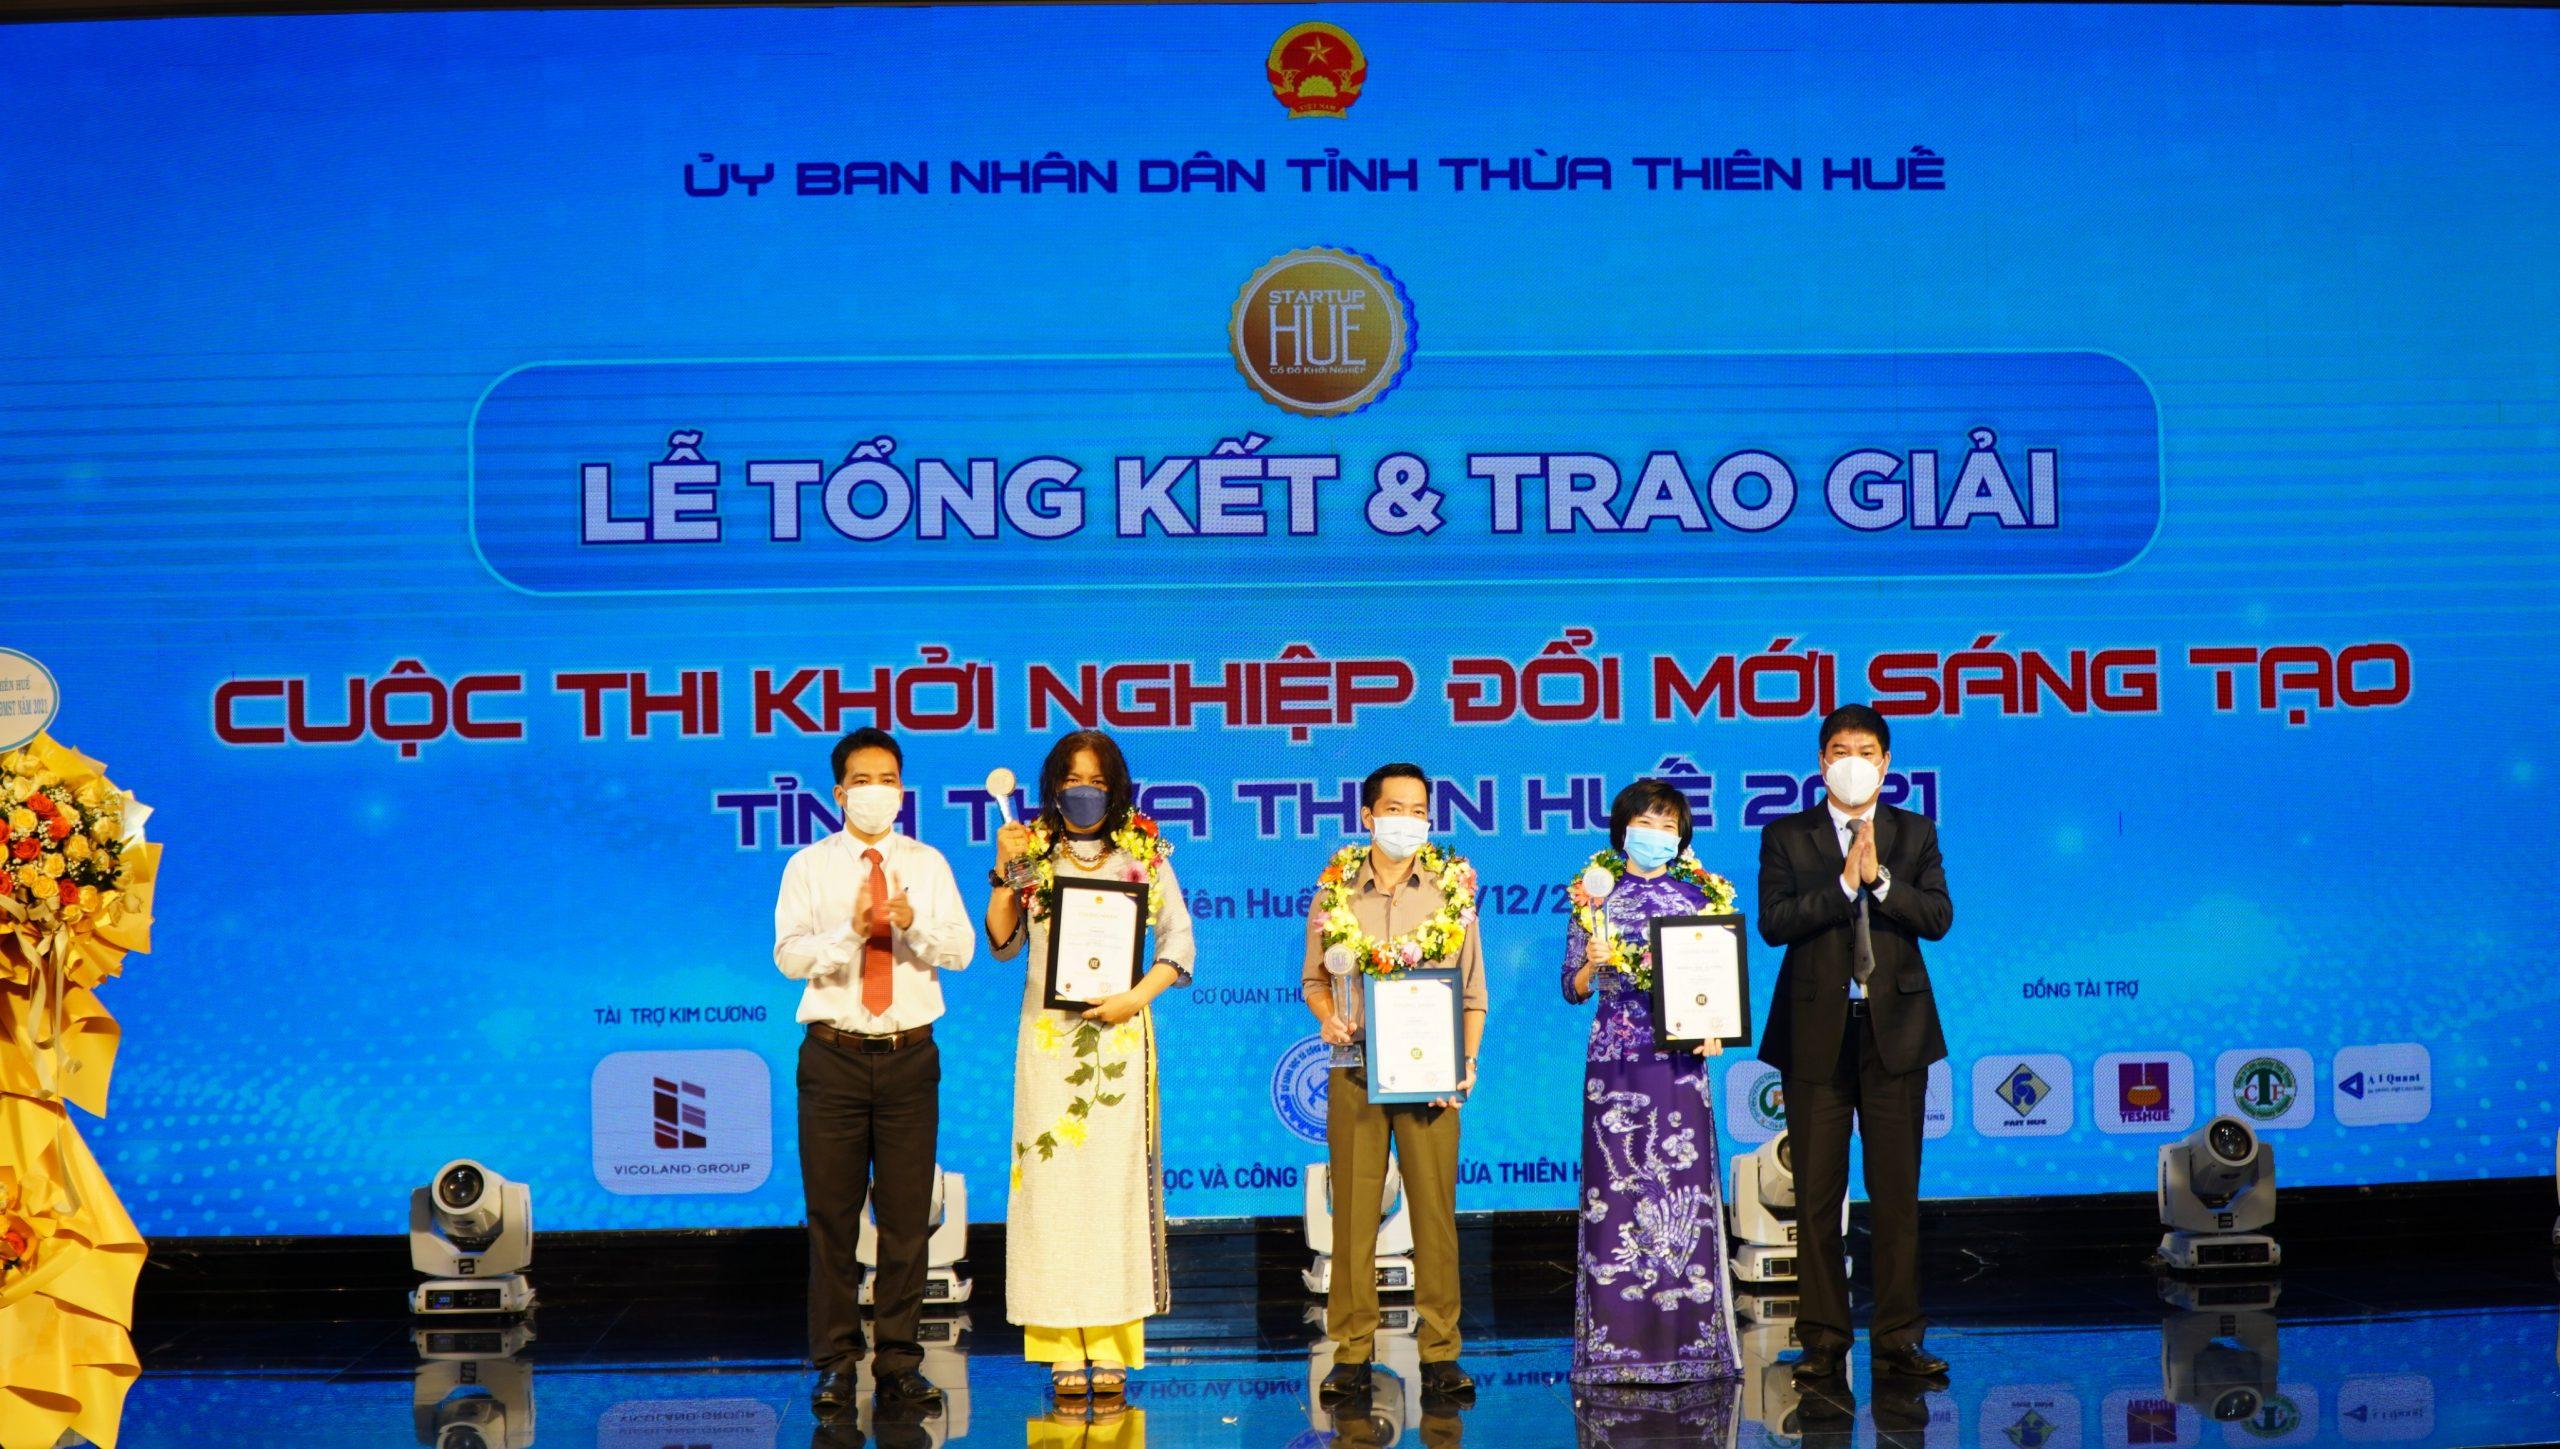 Tổng kết và trao giải Cuộc thi Khởi nghiệp đổi mới sáng tạo tỉnh Thừa Thiên Huế năm 2021